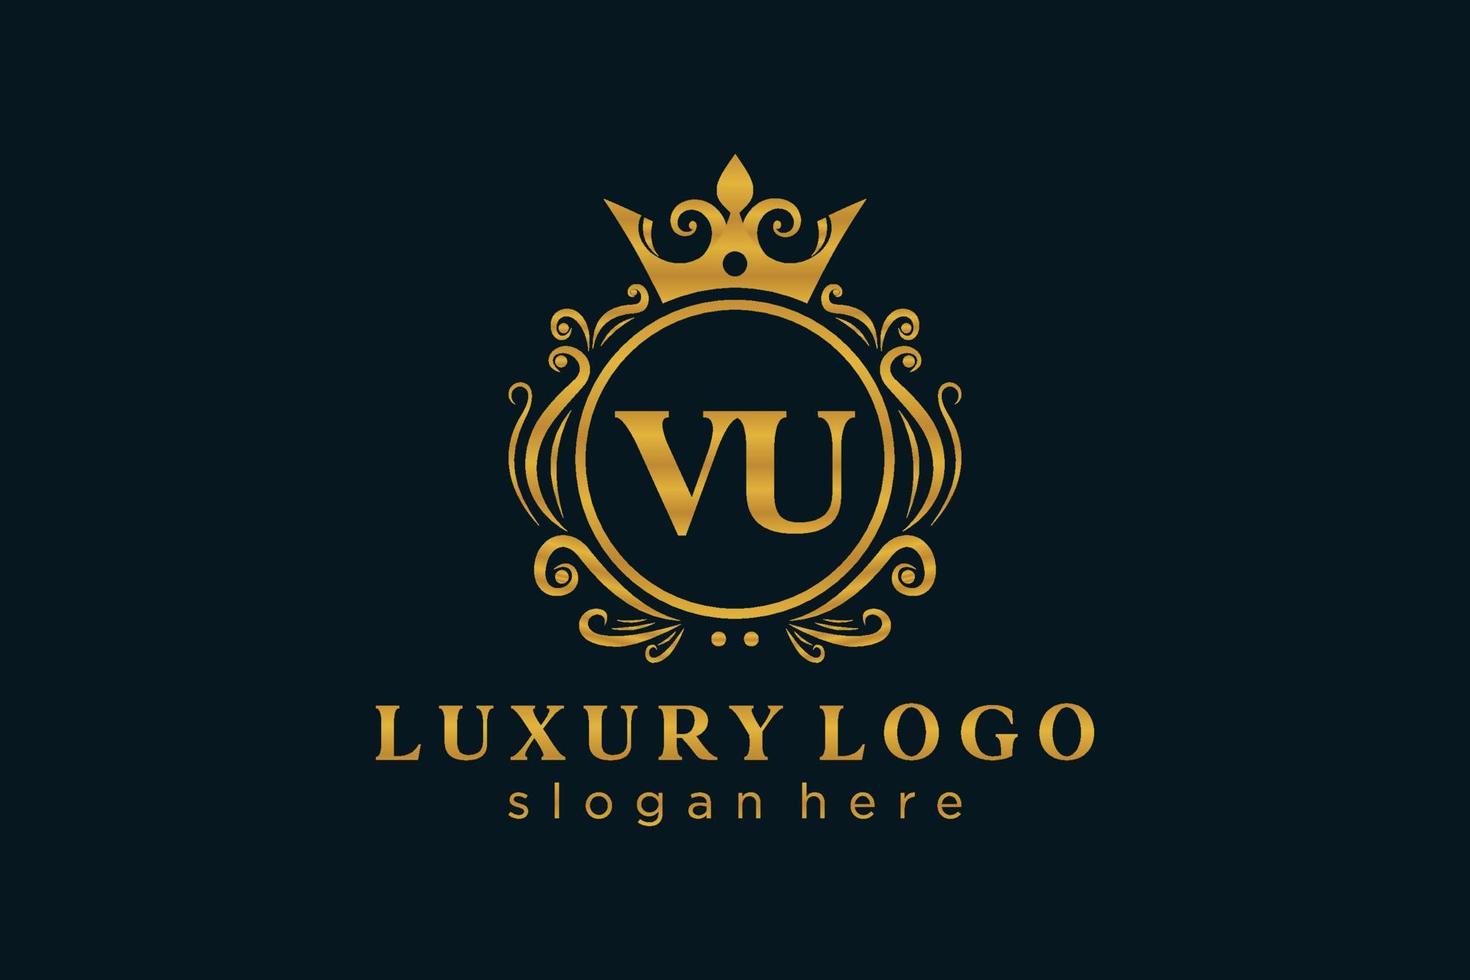 Anfangs-Vu-Buchstabe königliche Luxus-Logo-Vorlage in Vektorgrafiken für Restaurant, Lizenzgebühren, Boutique, Café, Hotel, heraldisch, Schmuck, Mode und andere Vektorillustrationen. vektor